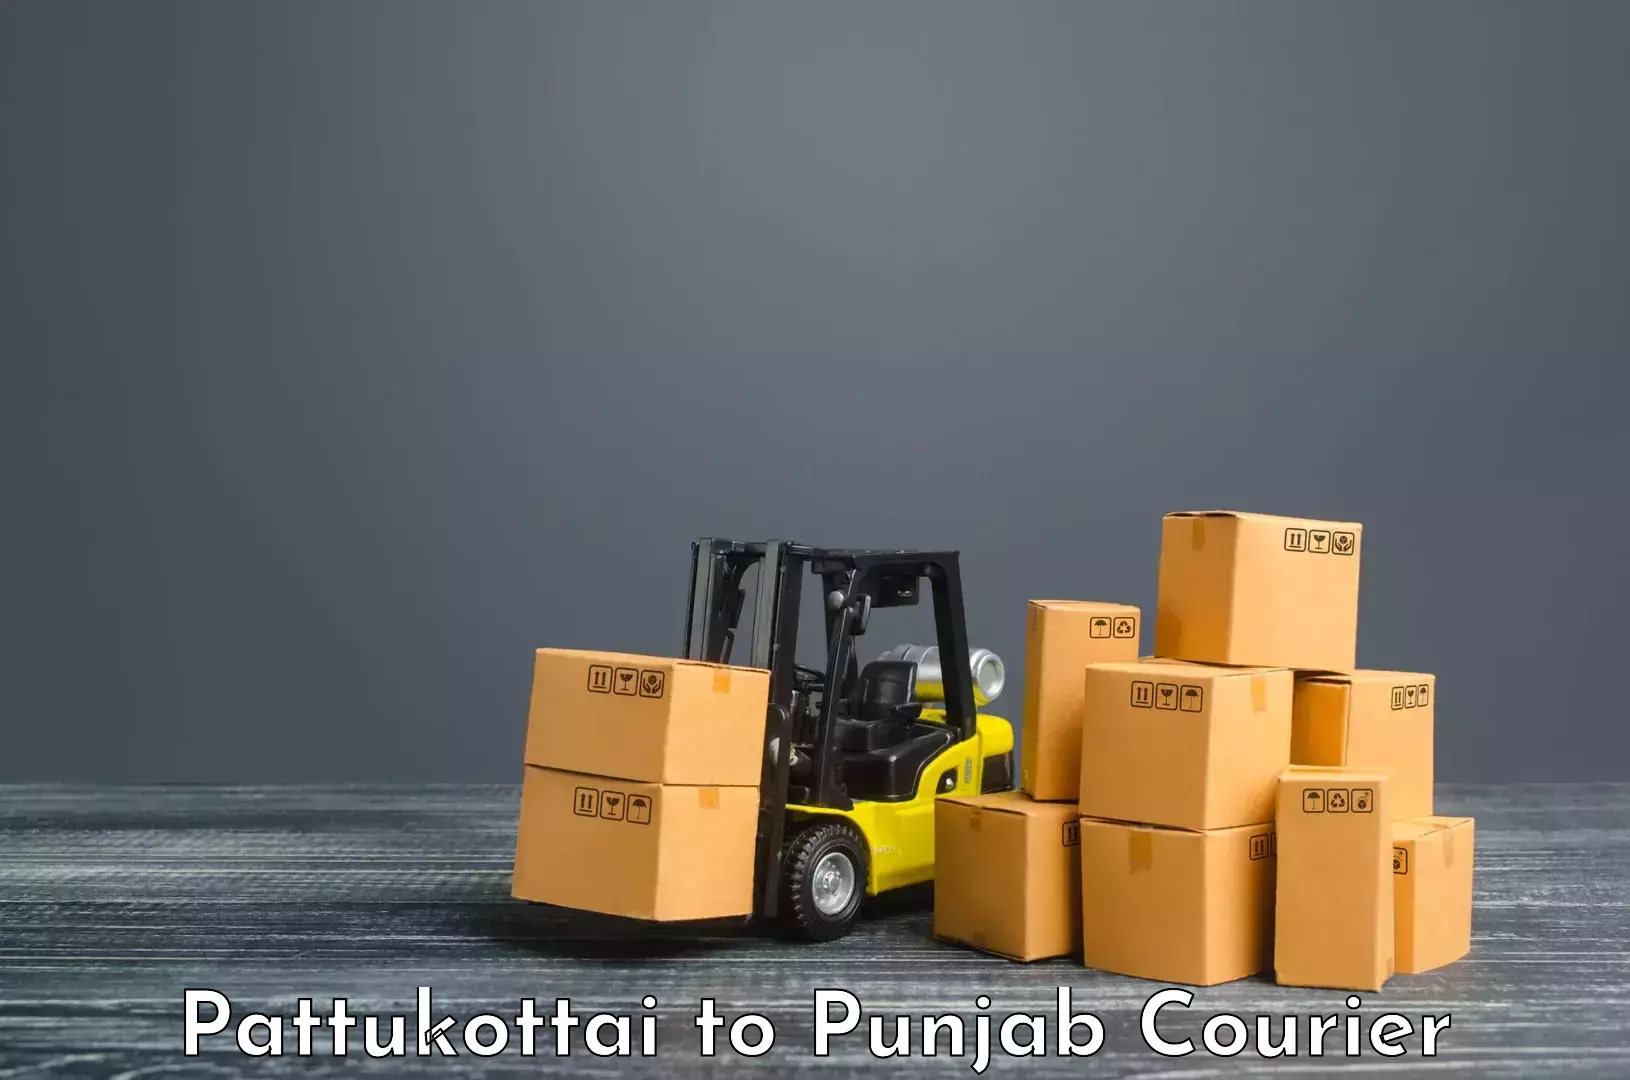 Business logistics support Pattukottai to Gurdaspur